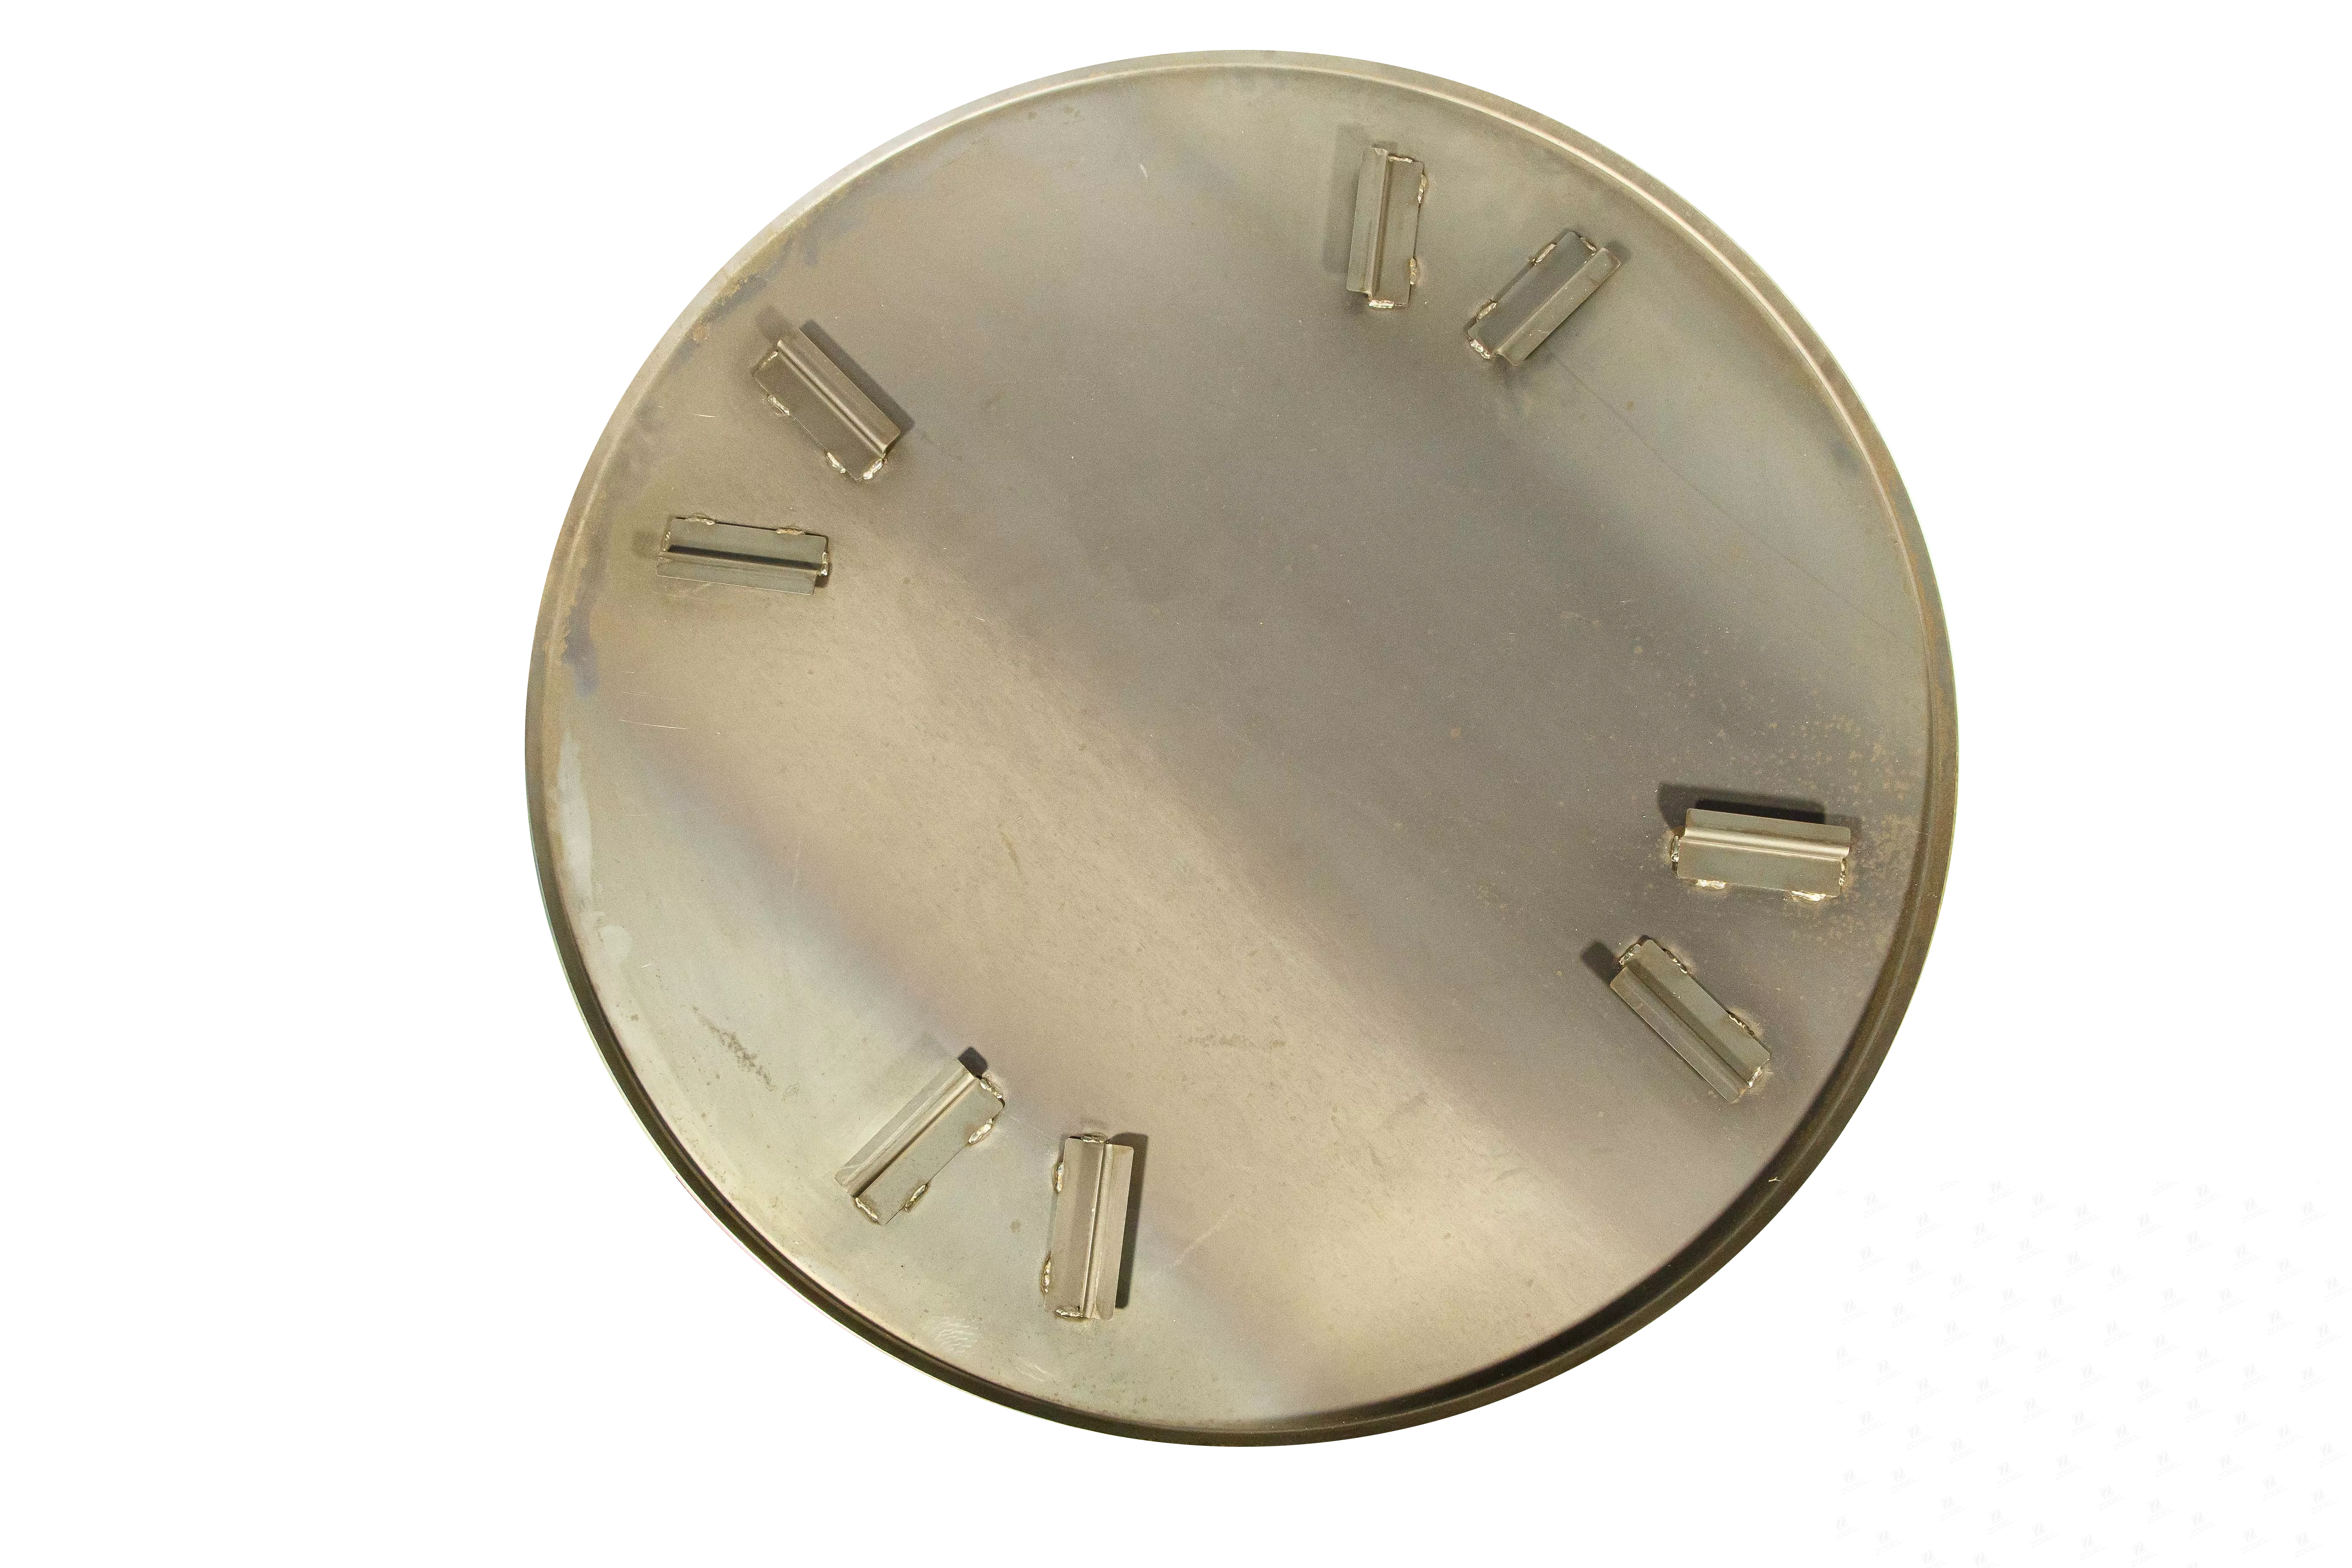 Затирочный диск Zogel 970, 8 лопастей